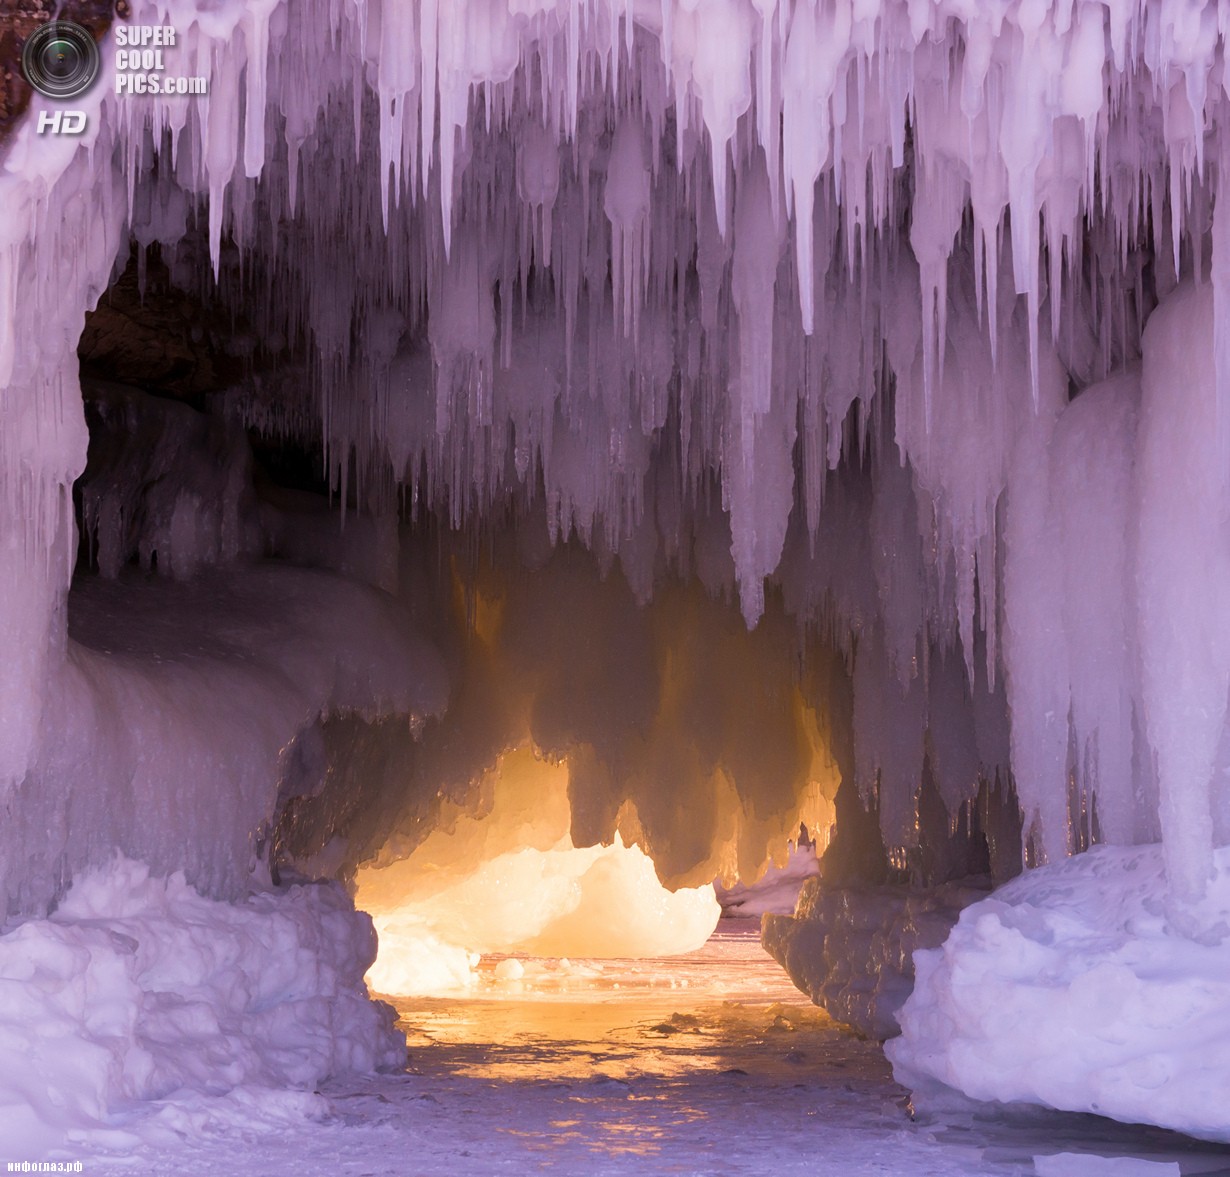 США. Корнукопия, Висконсин. 25 января. Ледяные пещеры Апосл-Айлендс на озере Верхнем. (Donald M. Tredinnick)